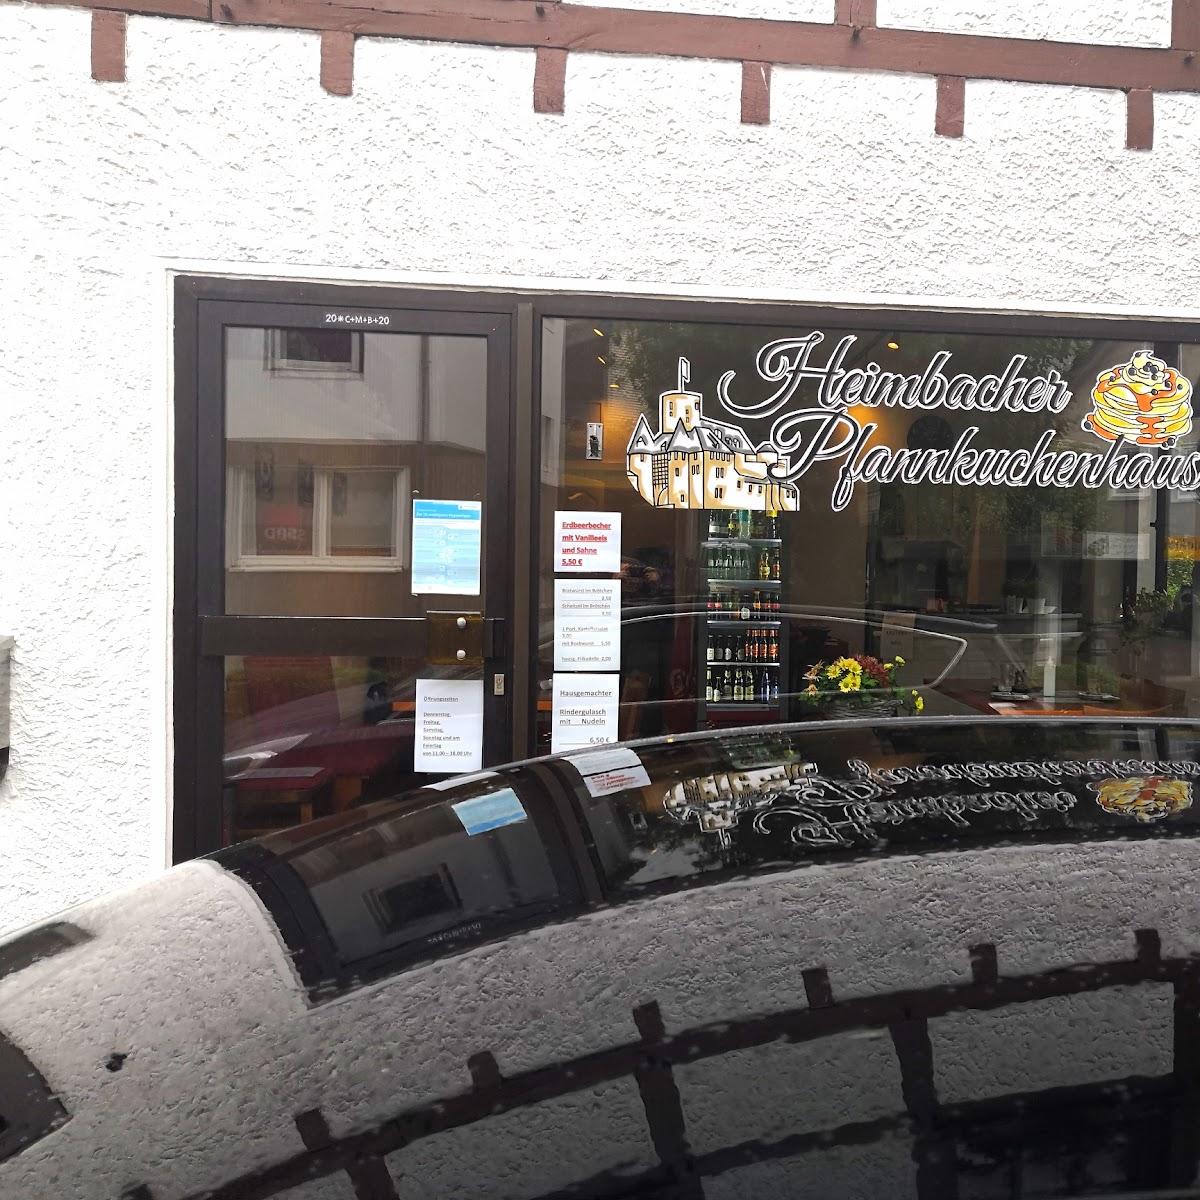 Restaurant "er Pfannkuchenhaus" in Heimbach